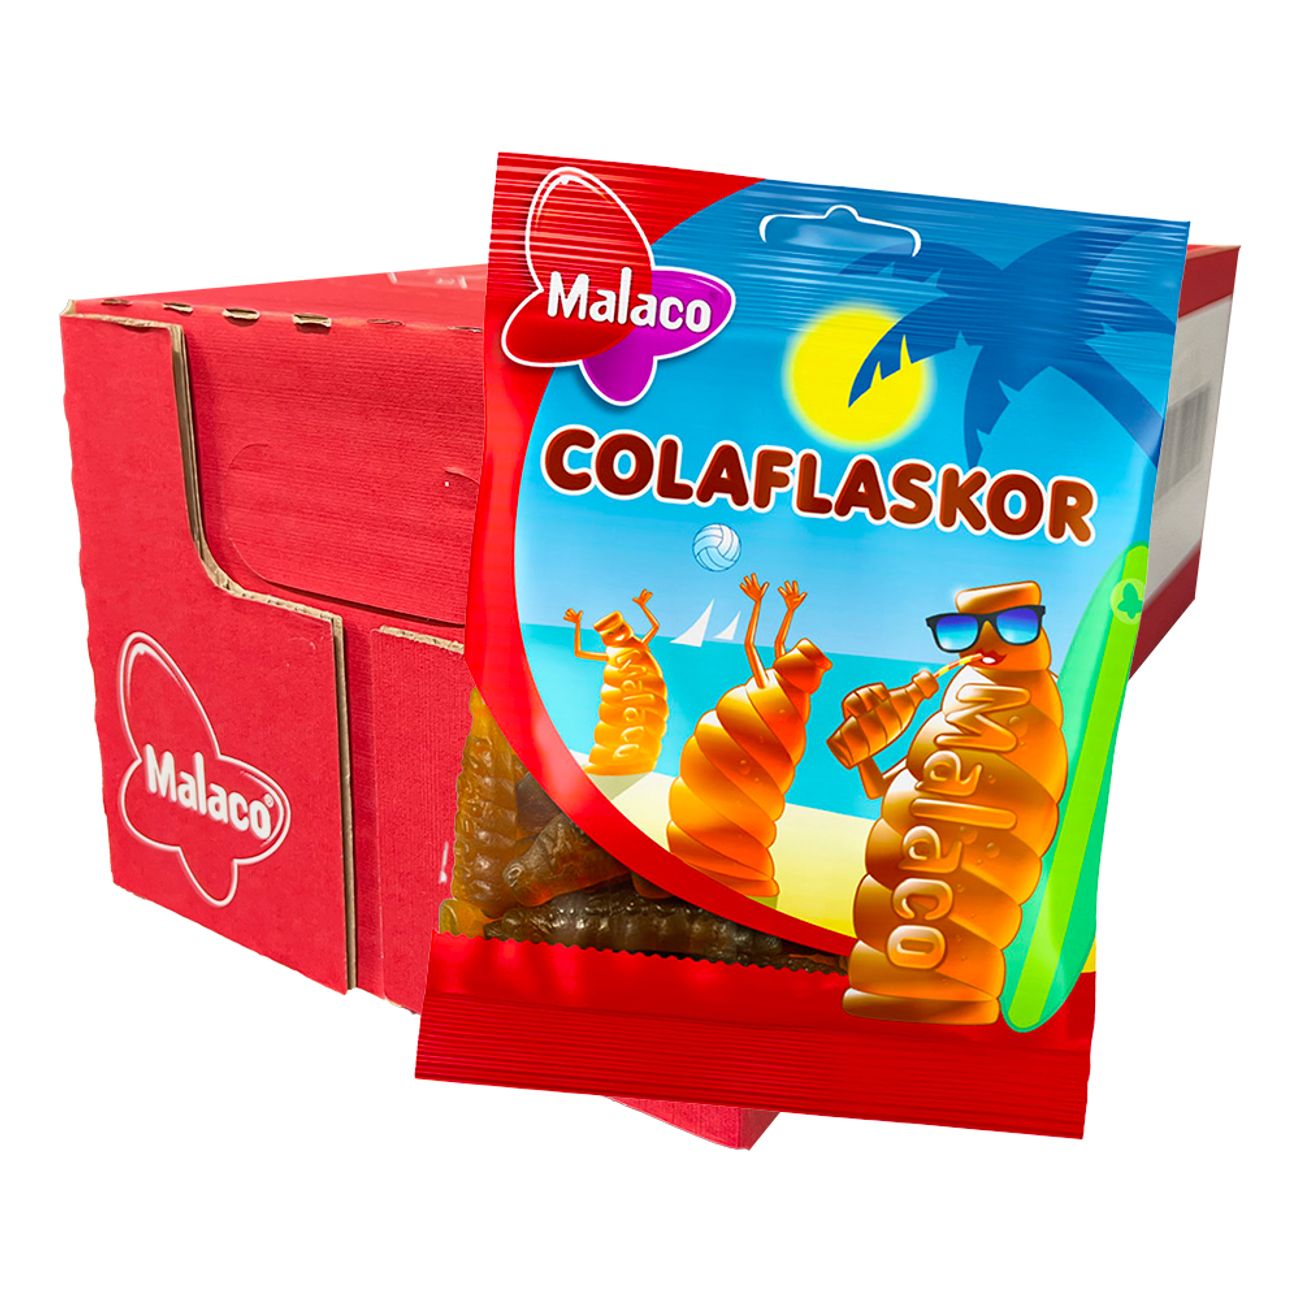 colaflaskor-storpack-43602-3